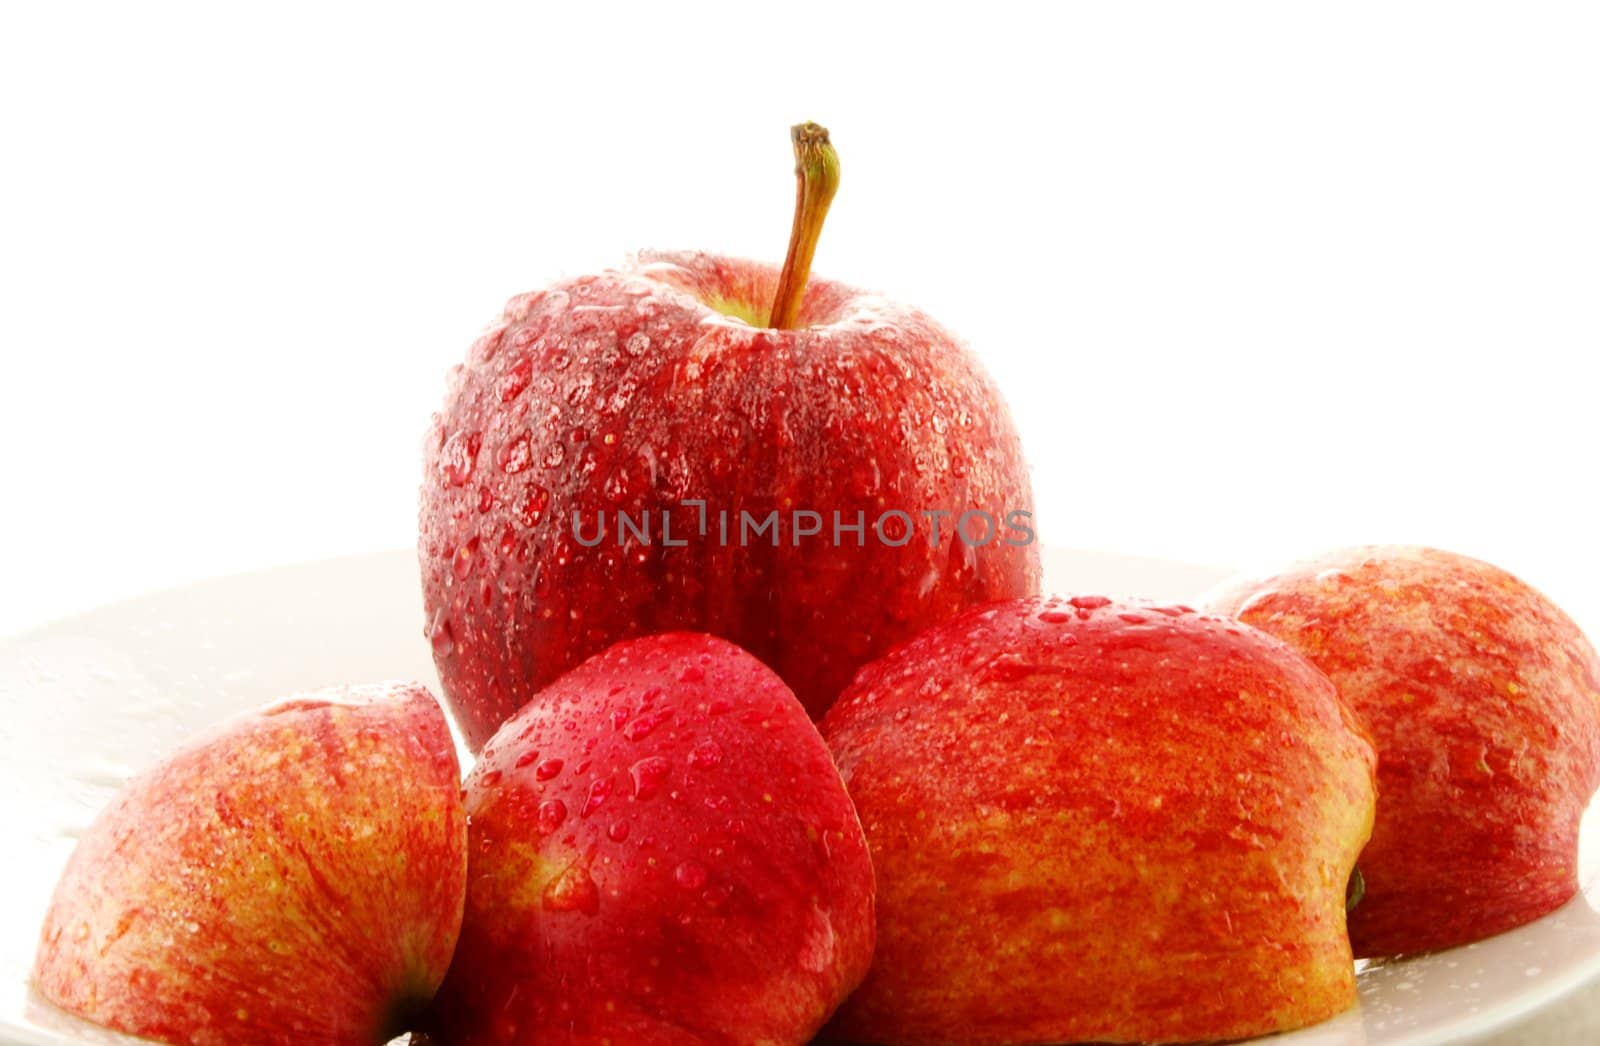 Red apple by Arvebettum